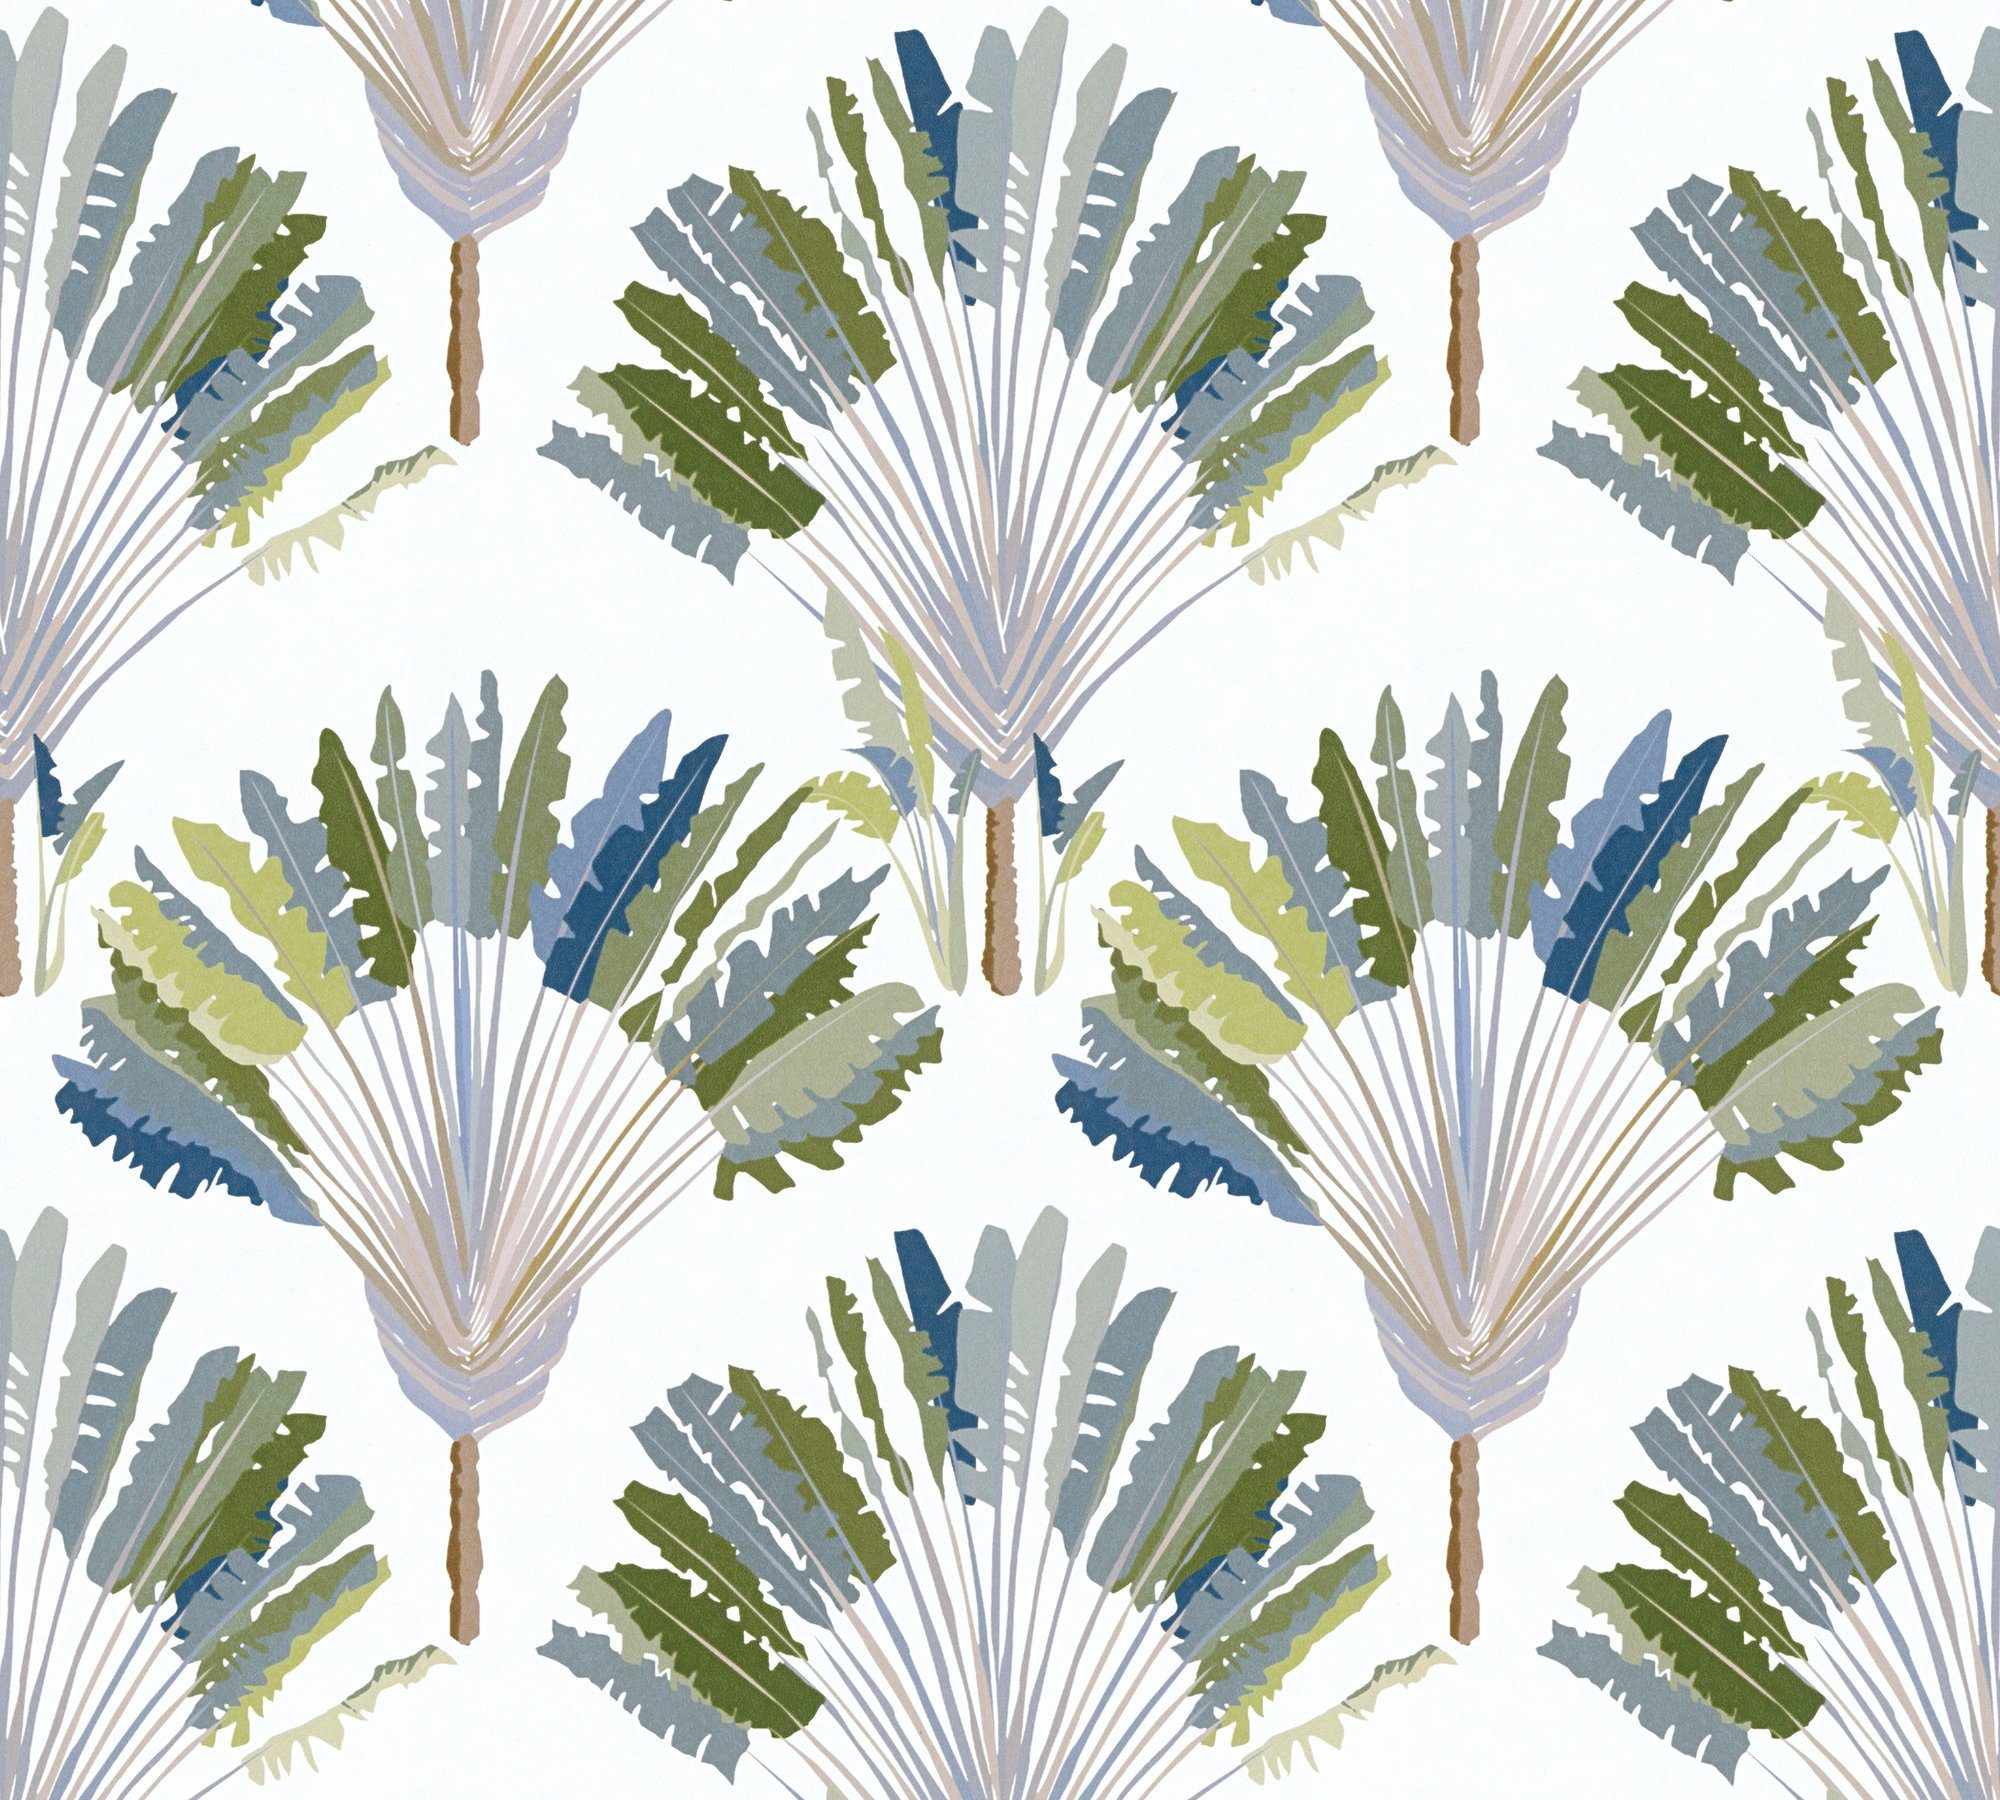 Vliestapete Jungle grün/weiß/blau Palmentapete Federn floral, botanisch, Architects tropisch, Dschungel Paper glatt, Tapete Chic,